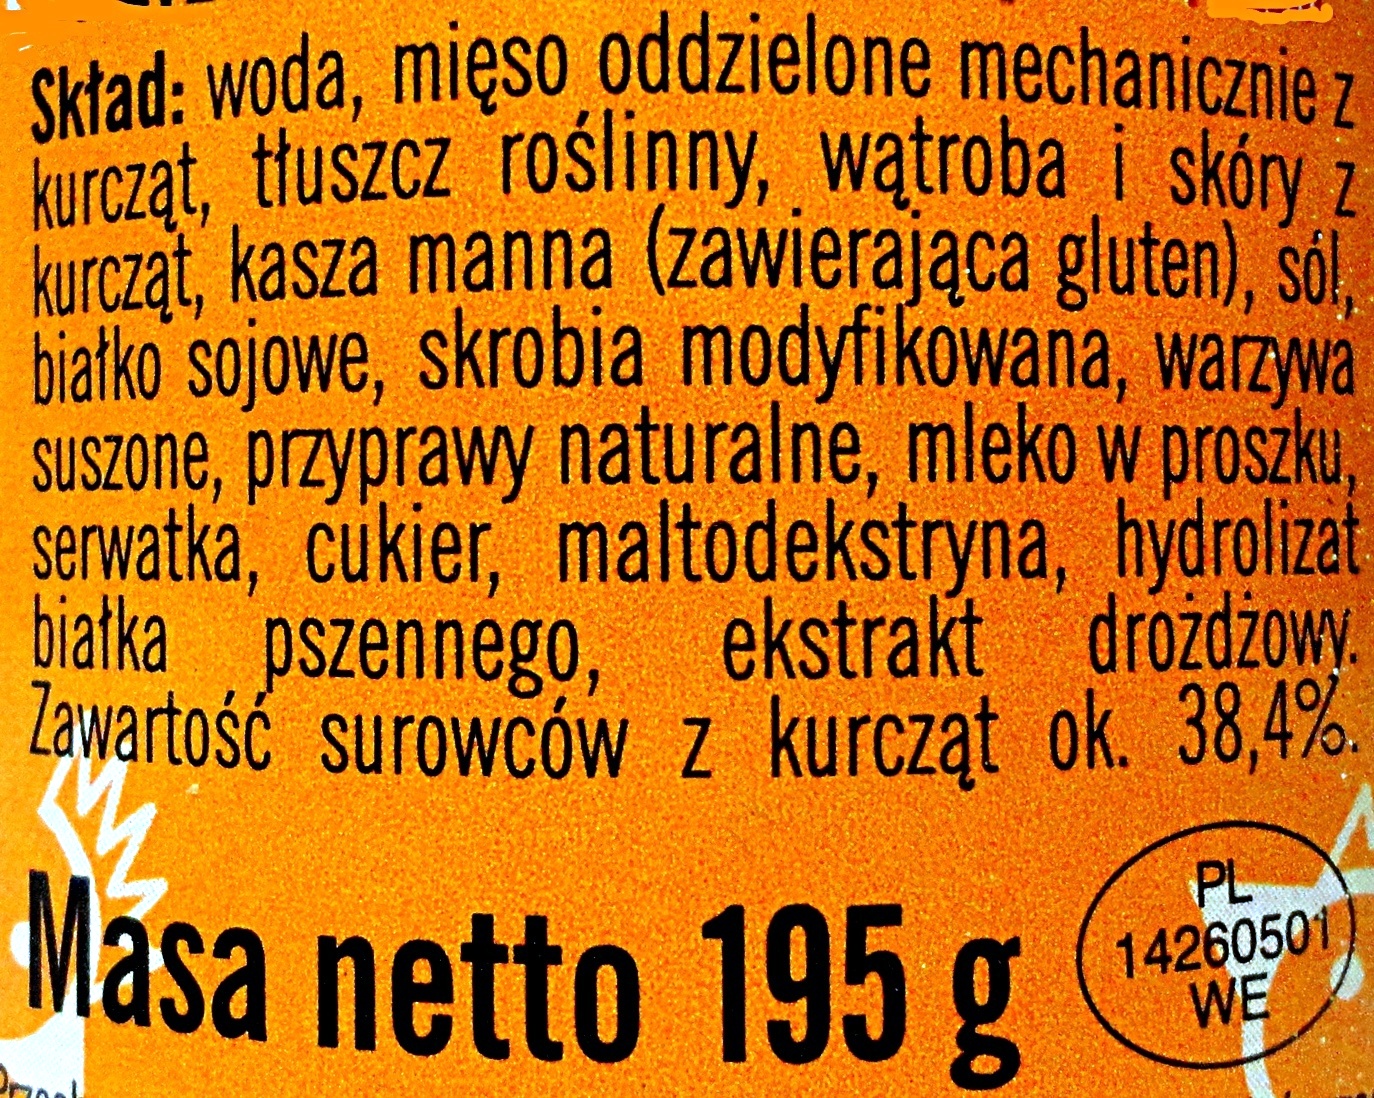 Podlaski - Ingredients - pl